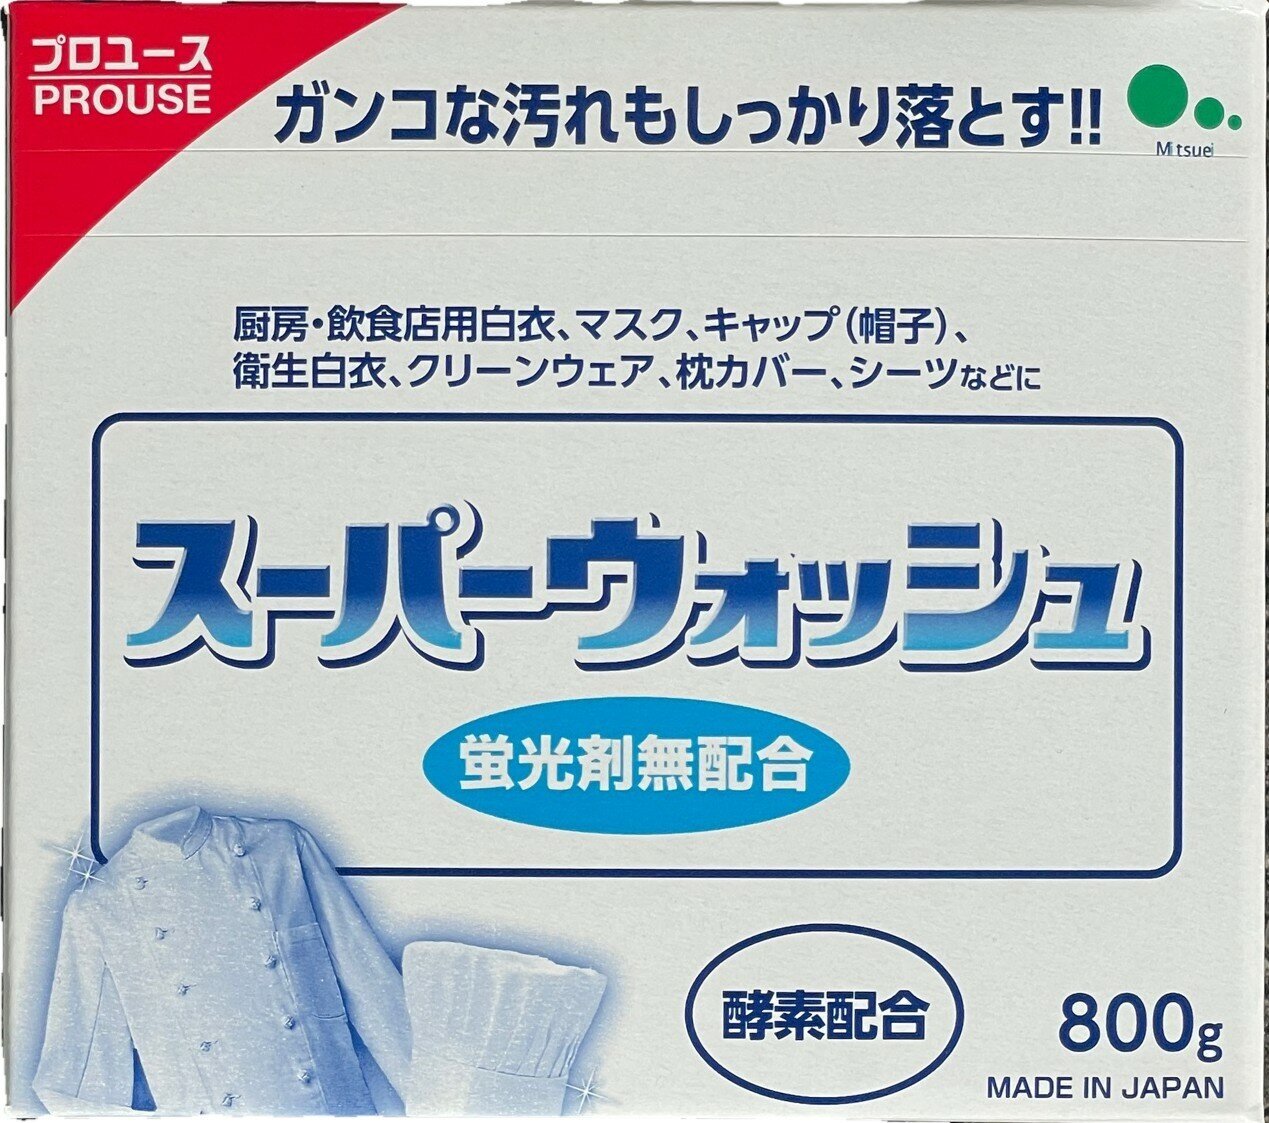 Стиральный порошок Mitsuei, Мощный отбеливающий порошок стиральный автомат "Super Wash" 800 гр. для стирки белого белья с ферментами, автомат Япония